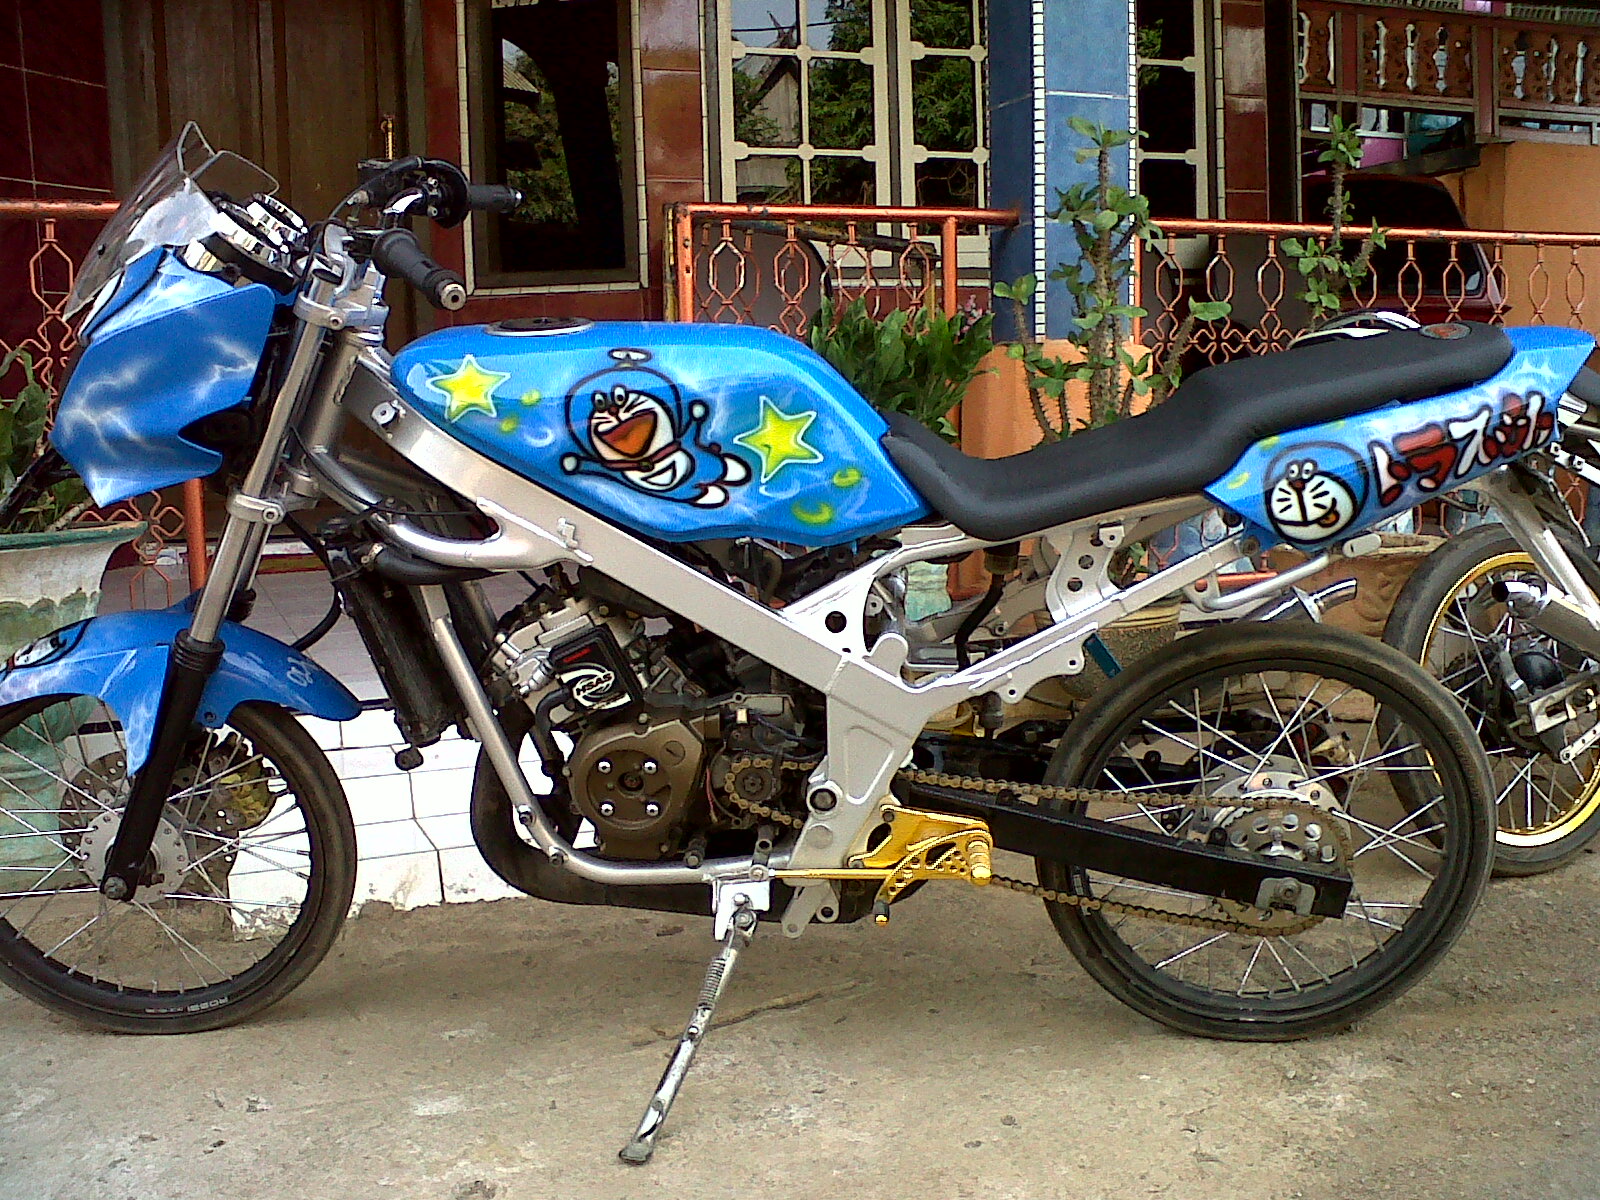 90 Modifikasi Motor Ninja R Warna Biru Sobat Modifikasi